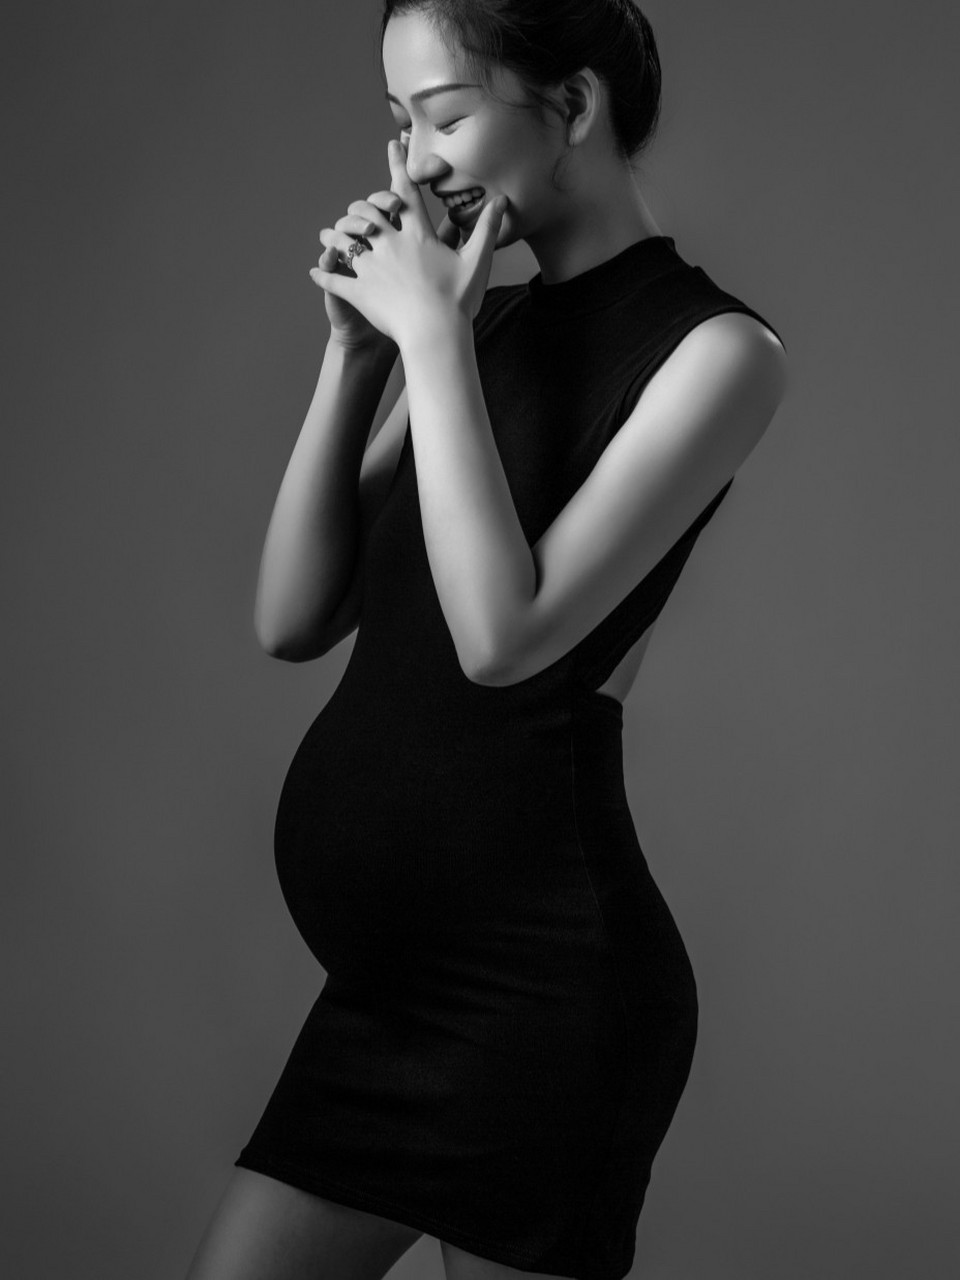 怀孕几个月拍孕妇照最好看 摆什么姿势最好 孕妇照何时拍?